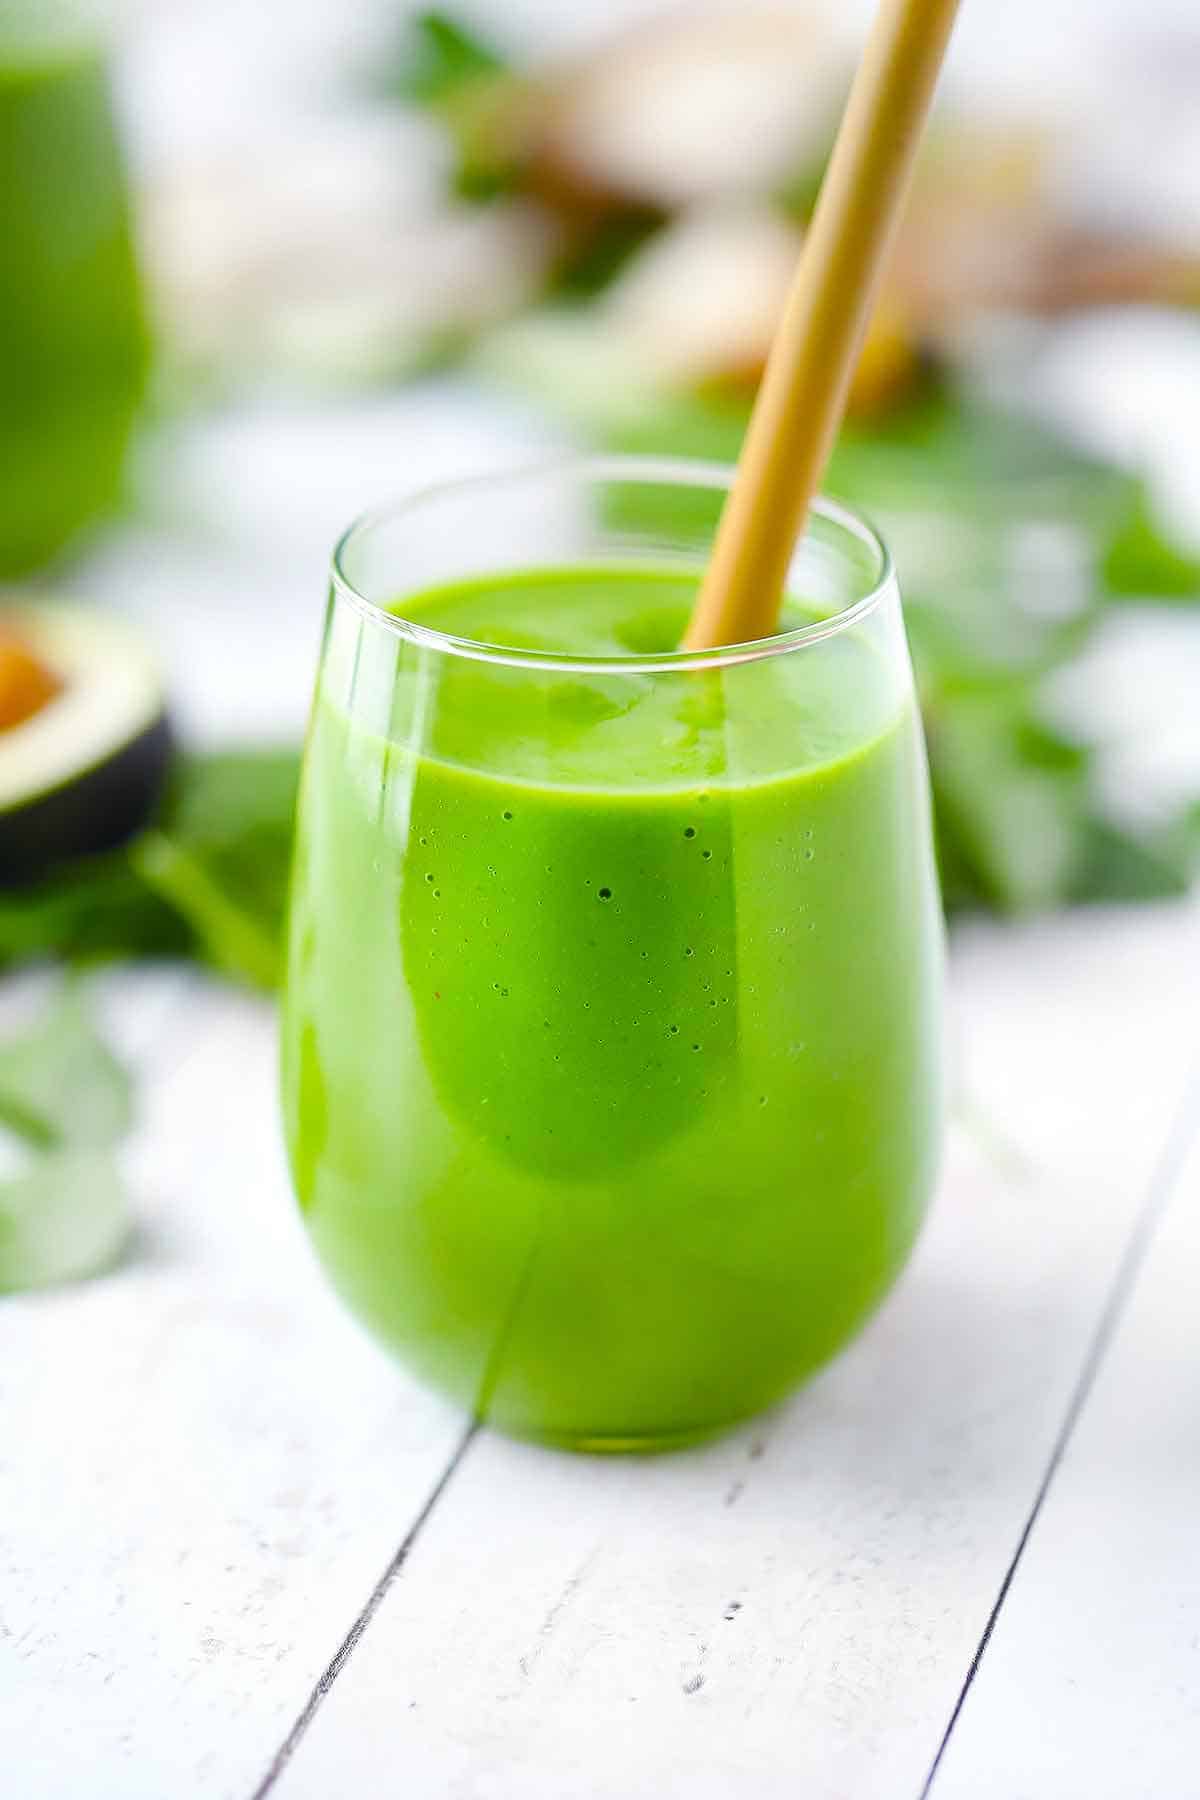 نمای نزدیک از آب سبز در یک لیوان شراب با نی بامبو.